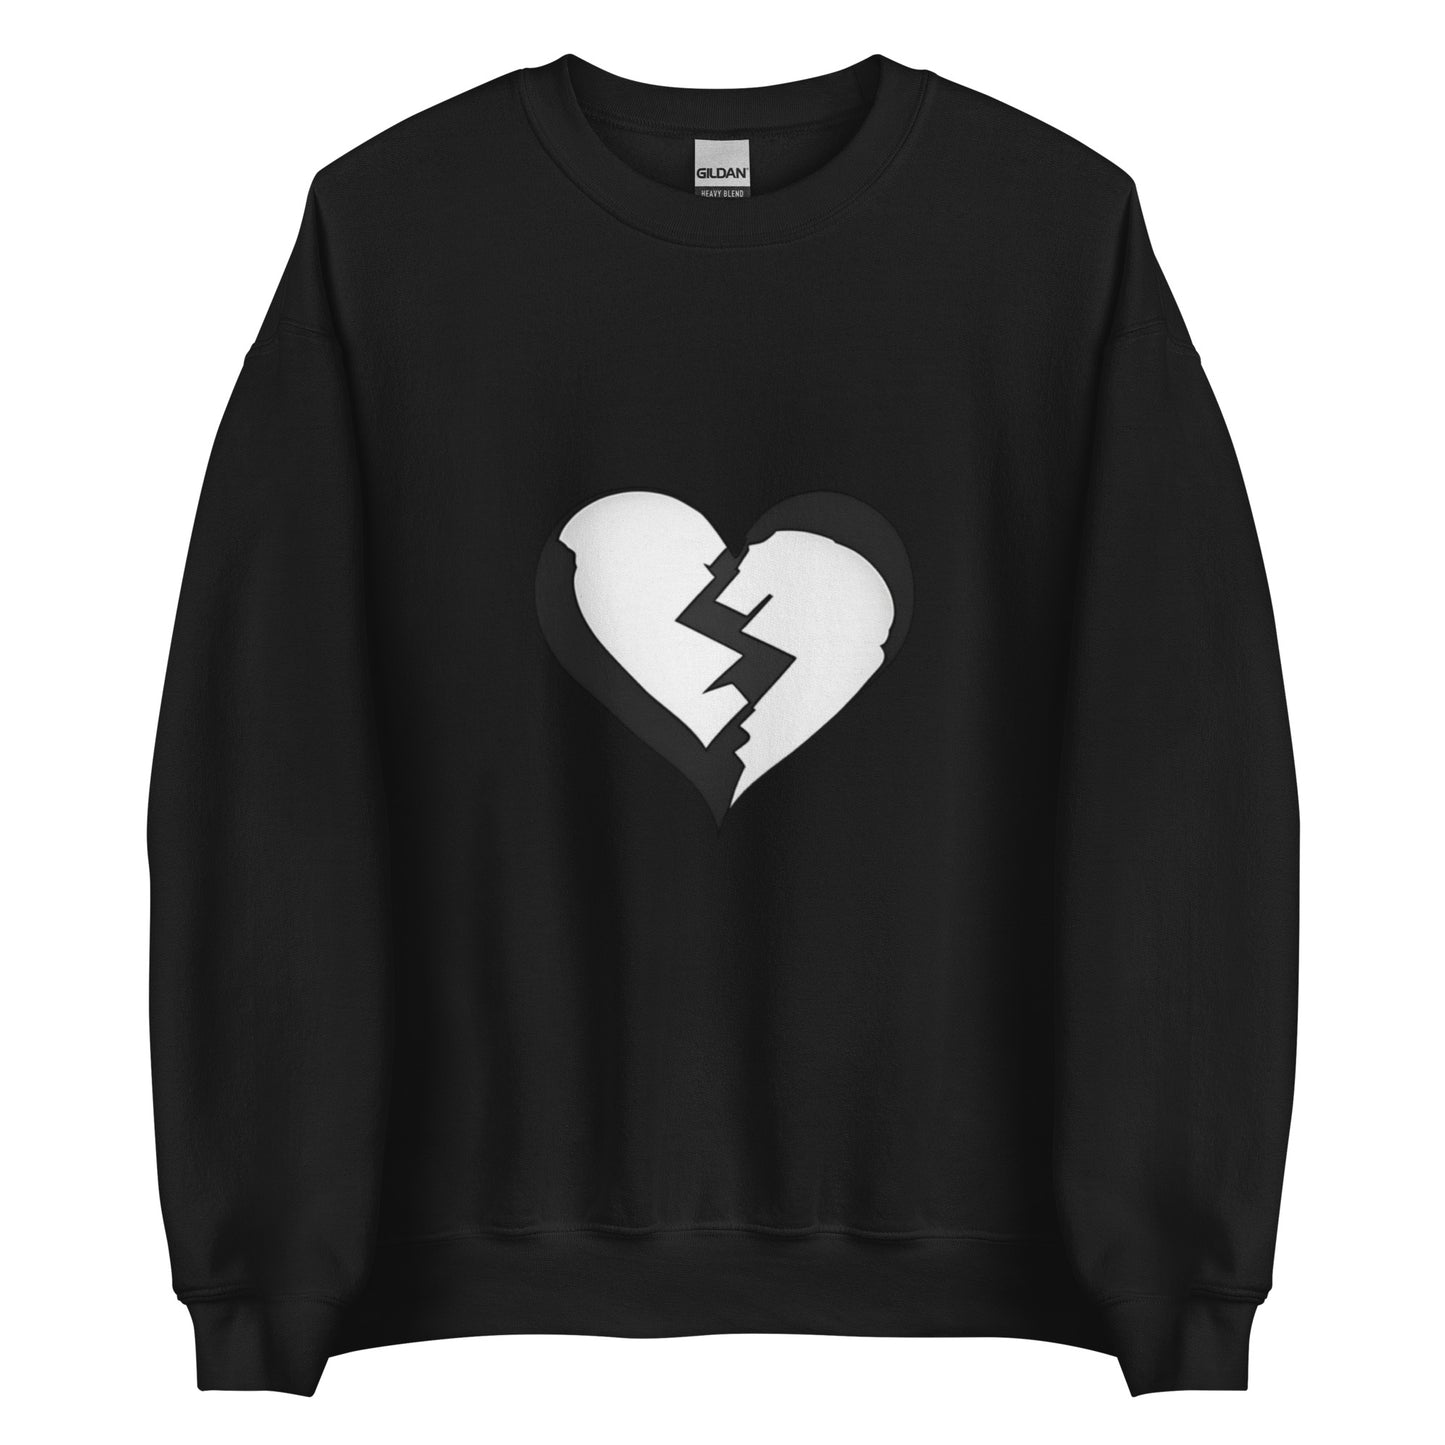 Broken Heart - Sweatshirt